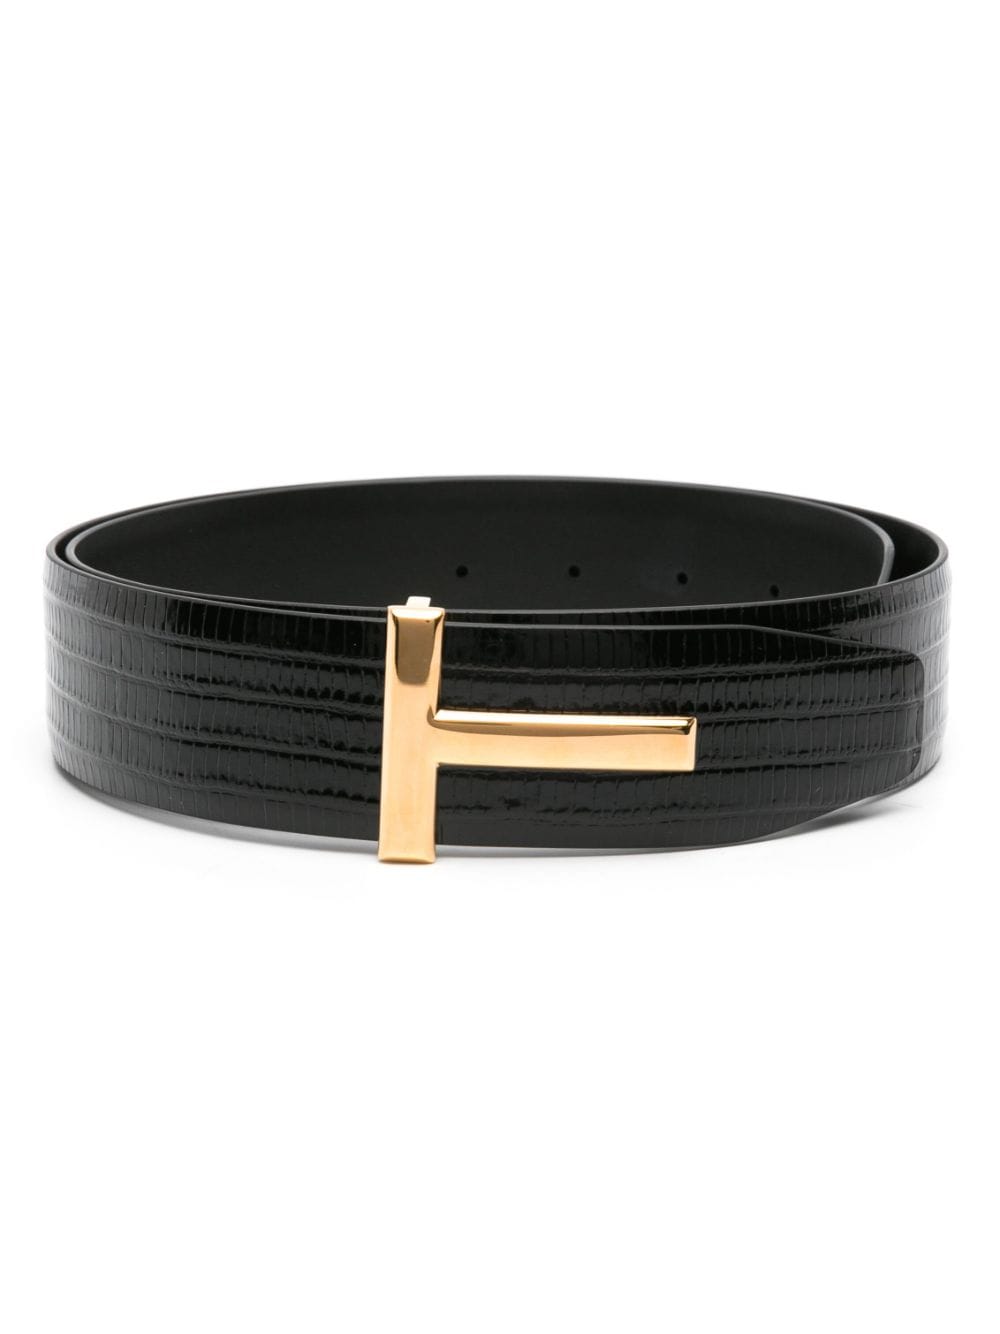 TOM FORD T-plaque leather belt - Black von TOM FORD